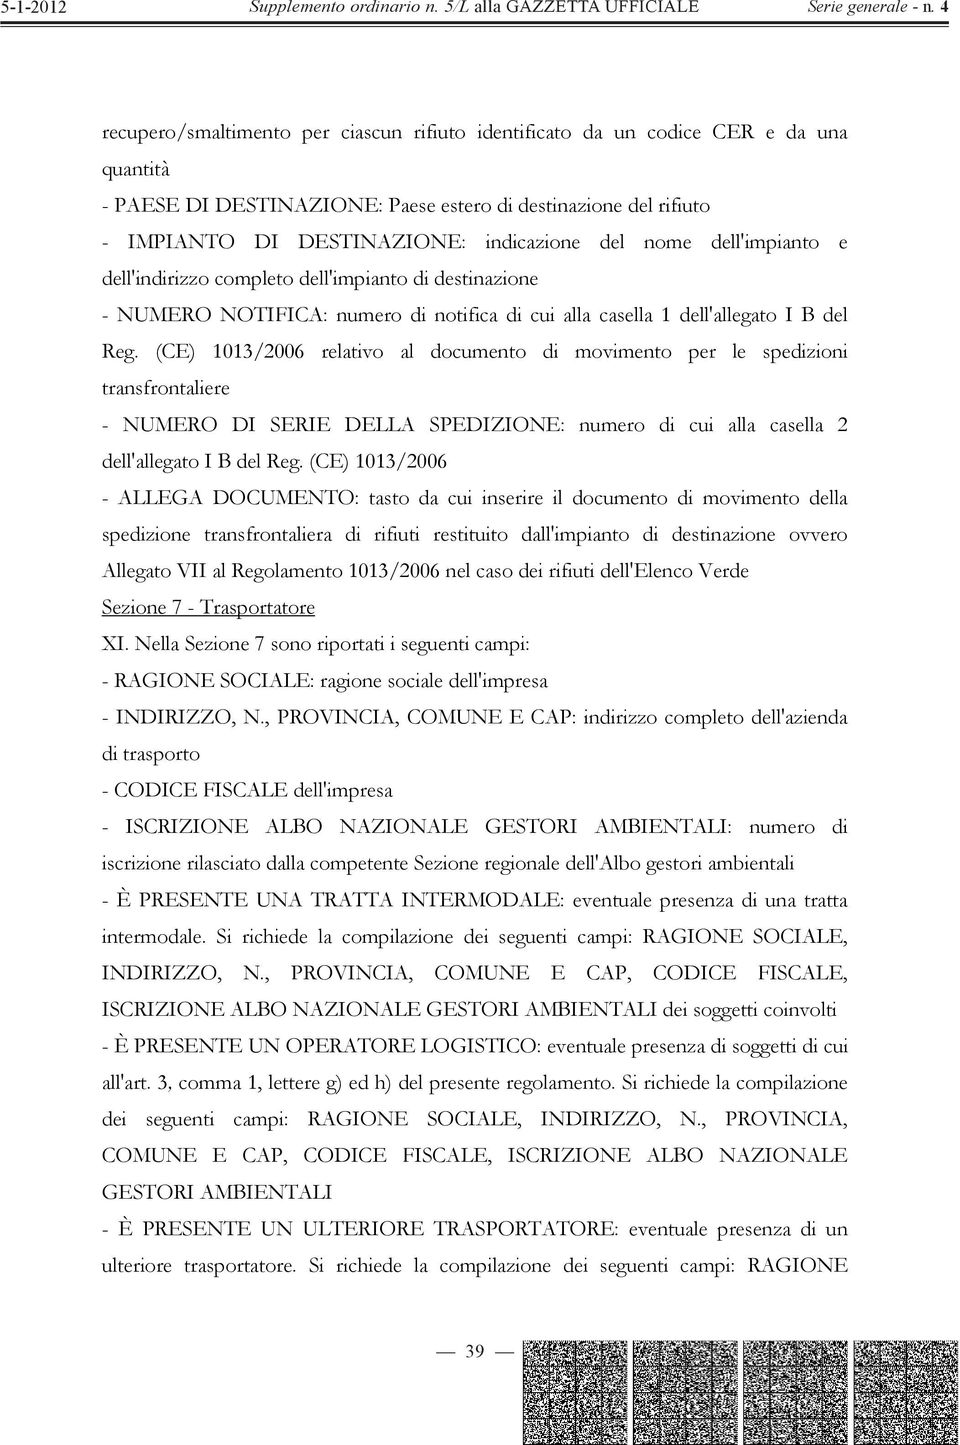 (CE) 1013/2006 relativo al documento di movimento per le spedizioni transfrontaliere - NUMERO DI SERIE DELLA SPEDIZIONE: numero di cui alla casella 2 dell'allegato I B del Reg.